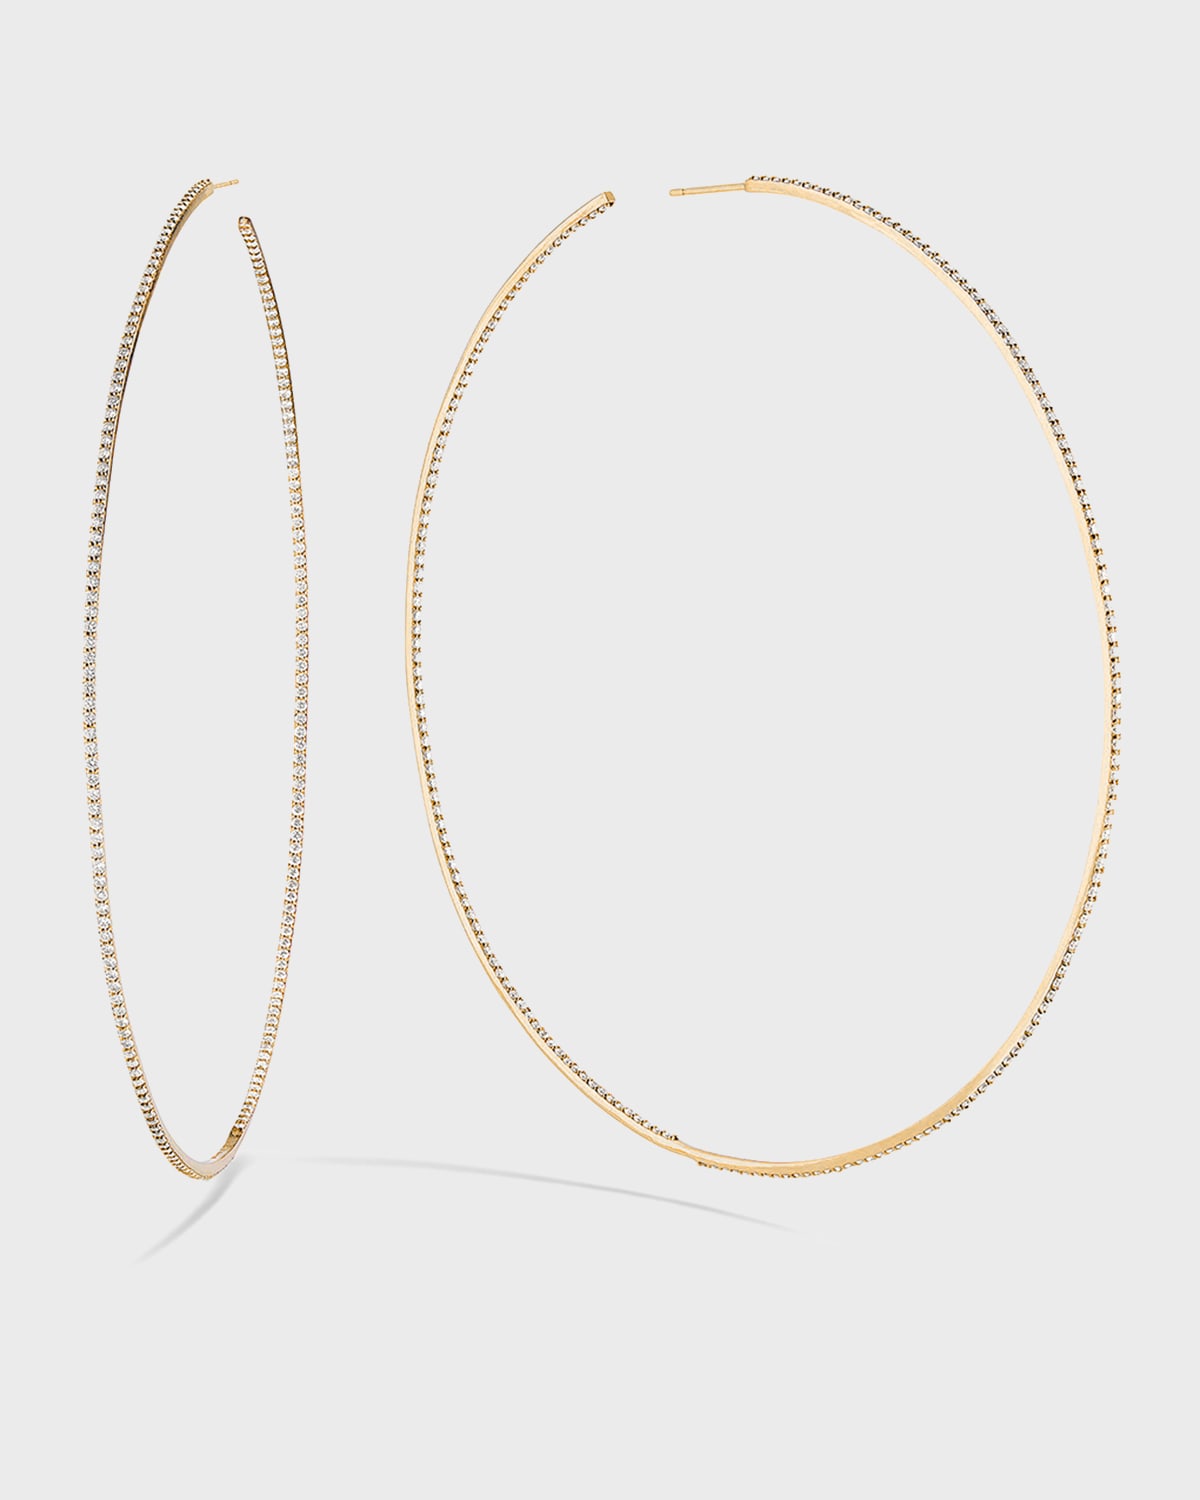 LANA JEWELRY 14k Gold & Skinny Diamond Hoop Earrings